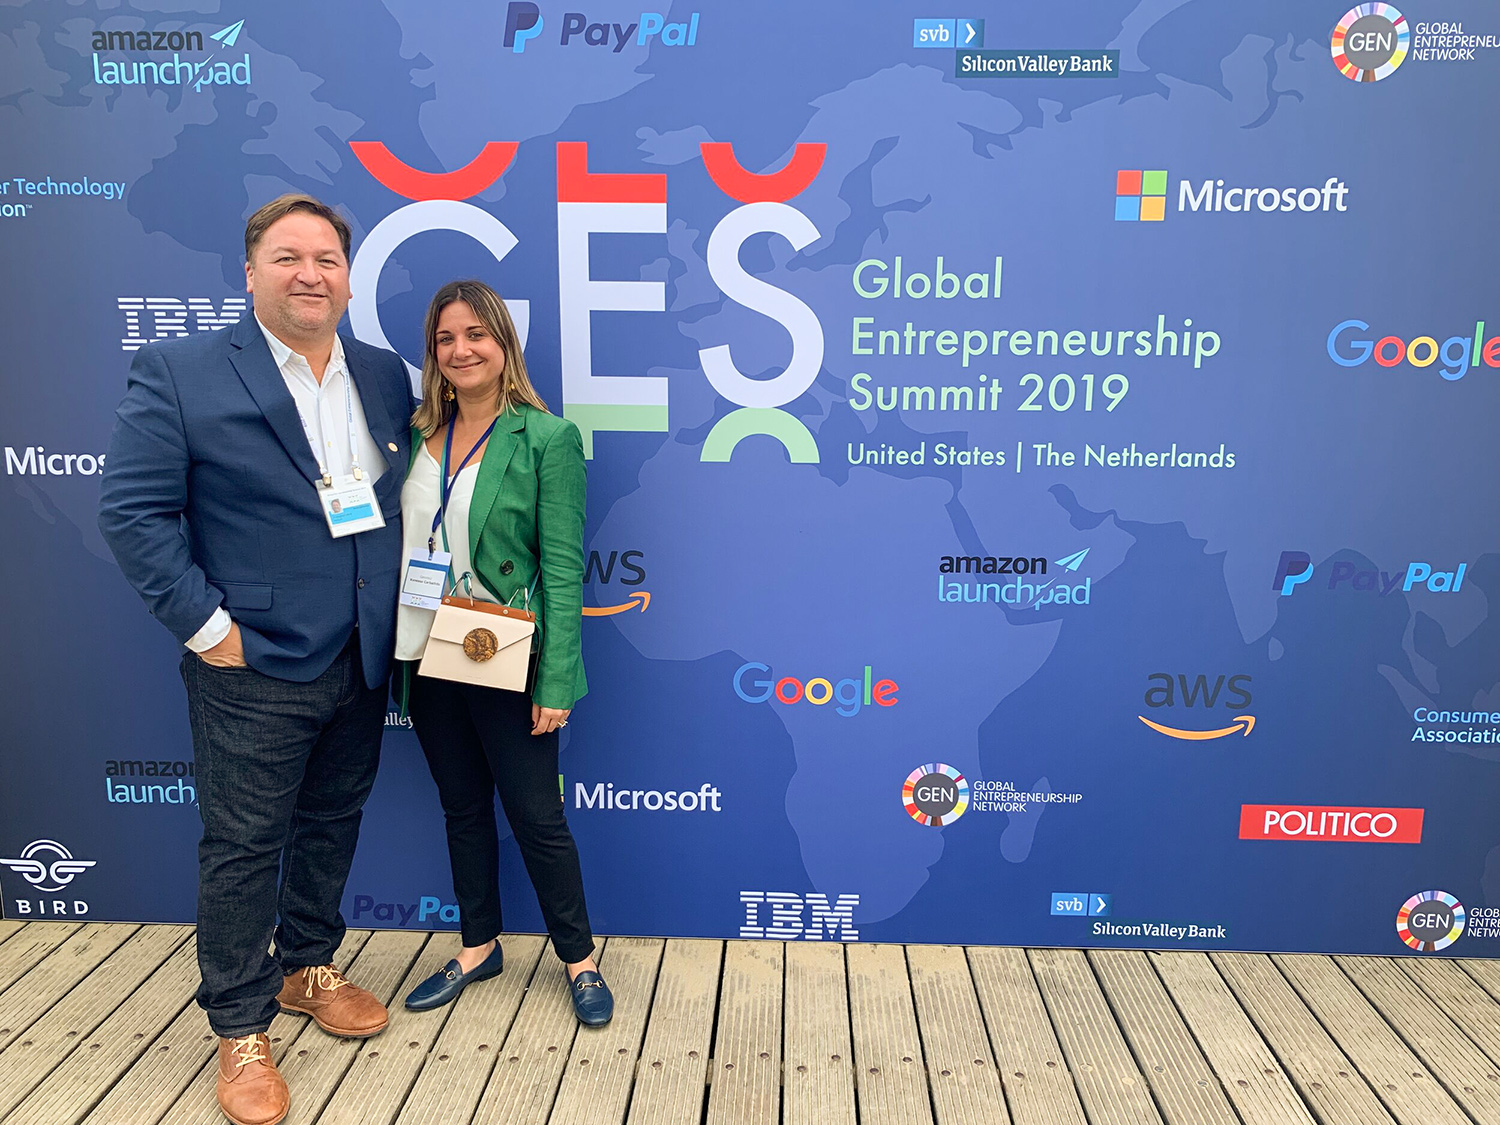 Vanessa Carballido Clerch y Francisco Laboy Colondres, cofundadores de Genmoji, posan frente a un telón de fondo que dice “GES Global Entrepreneurship Summit 2019 United States | Netherlands."